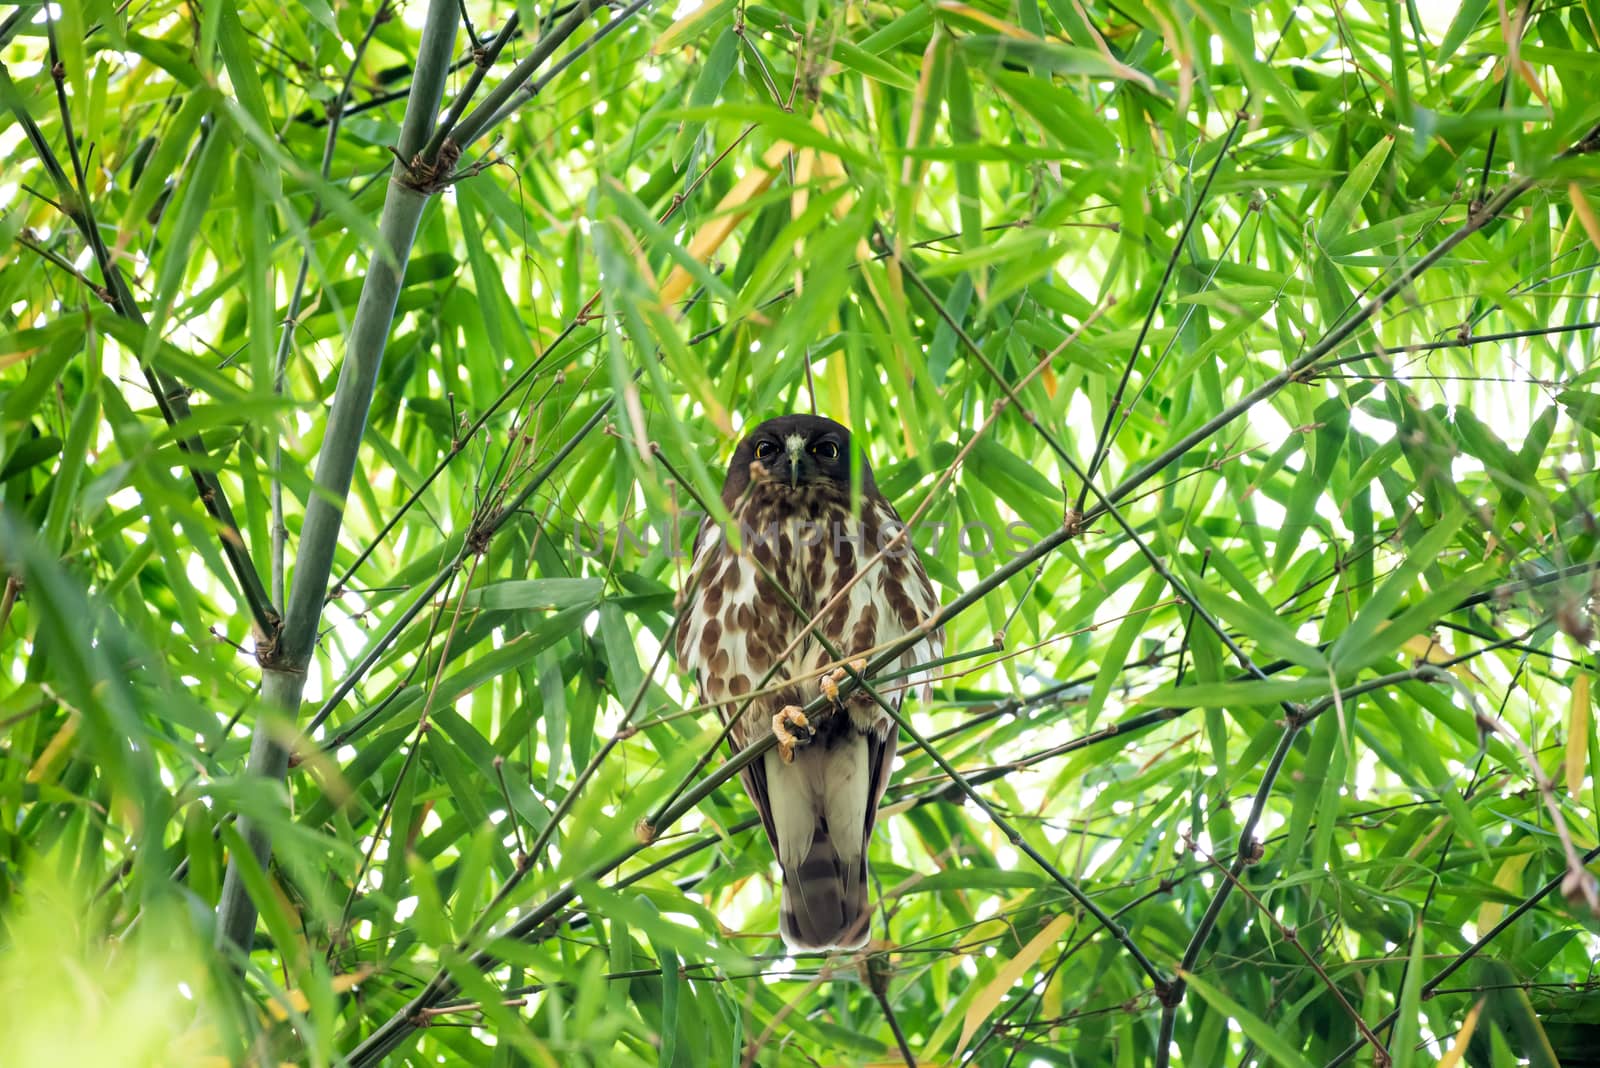 Bird (Northern Boobook) in a nature wild by PongMoji